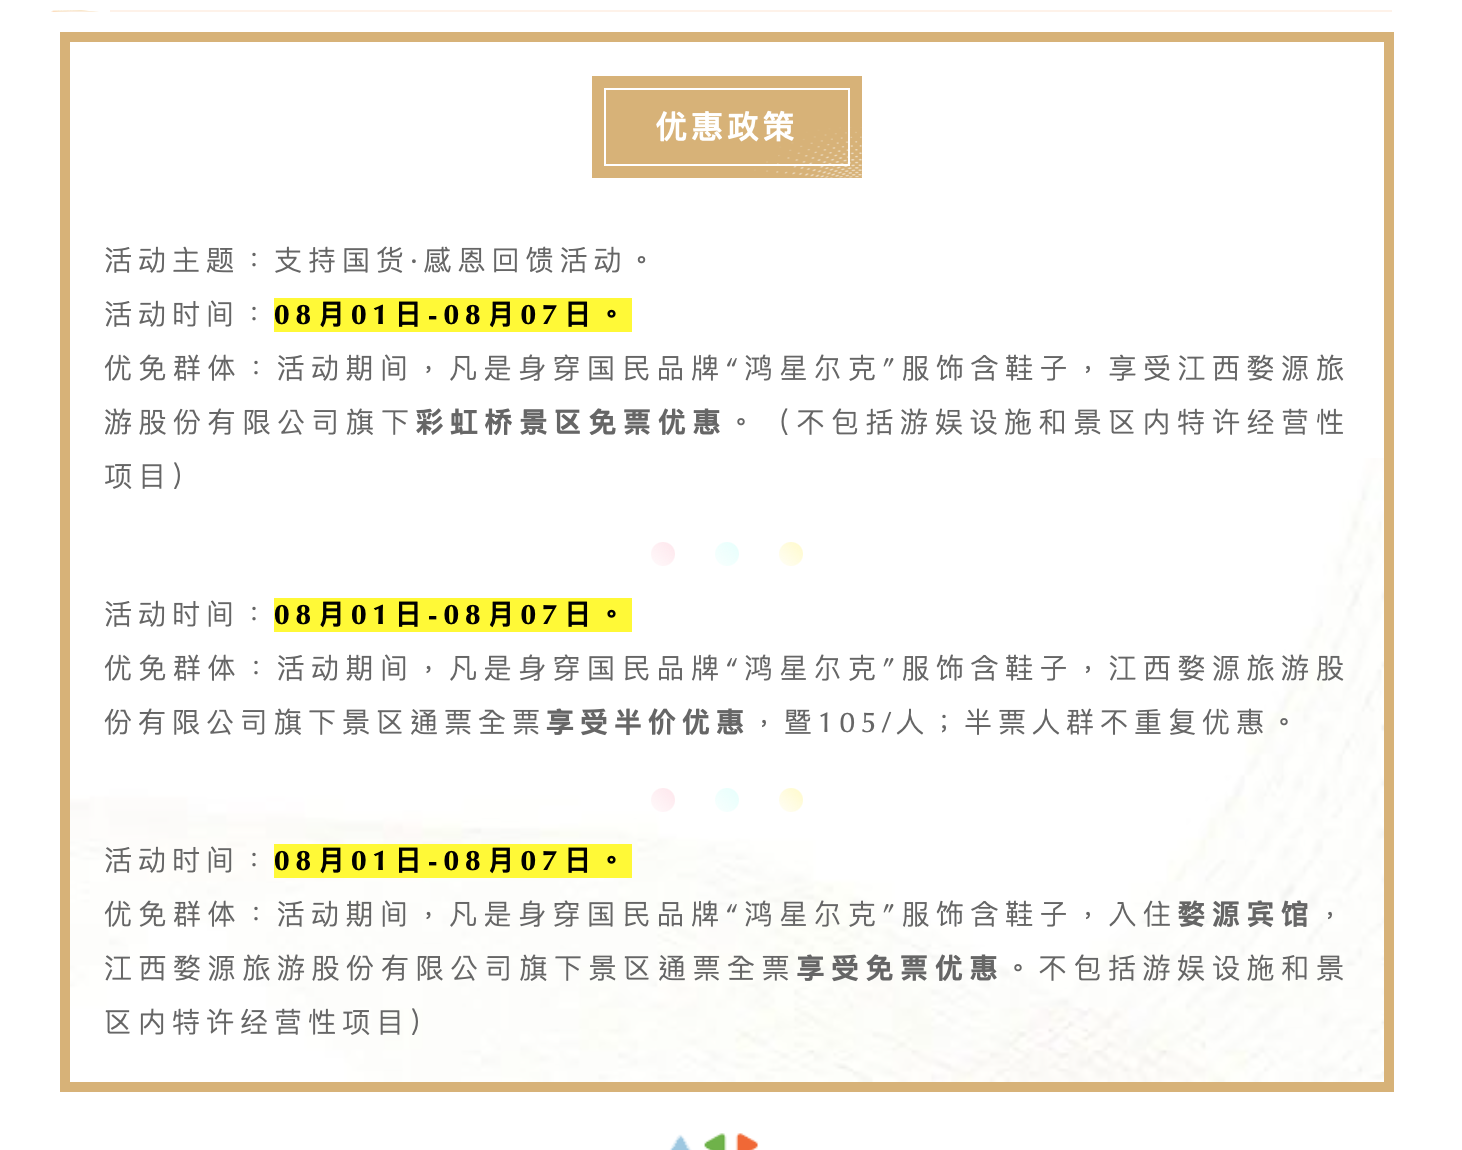 江西婺源旅游股份有限公司相关政策。